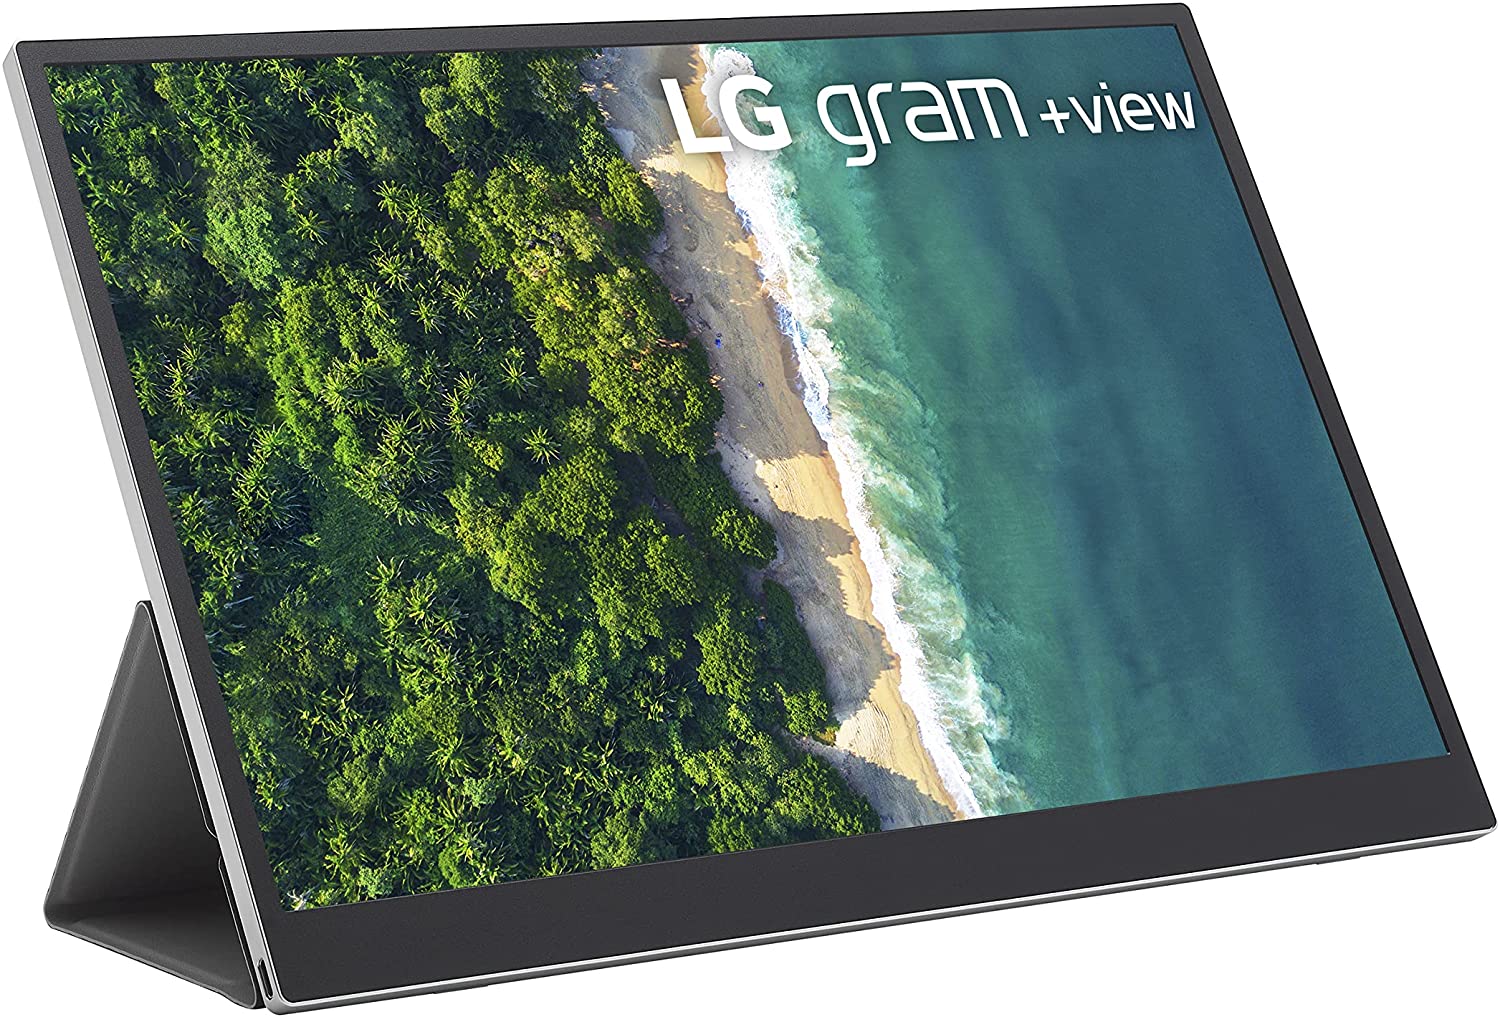 Imagem do produto do monitor portátil LG Gram +View 16MQ70.